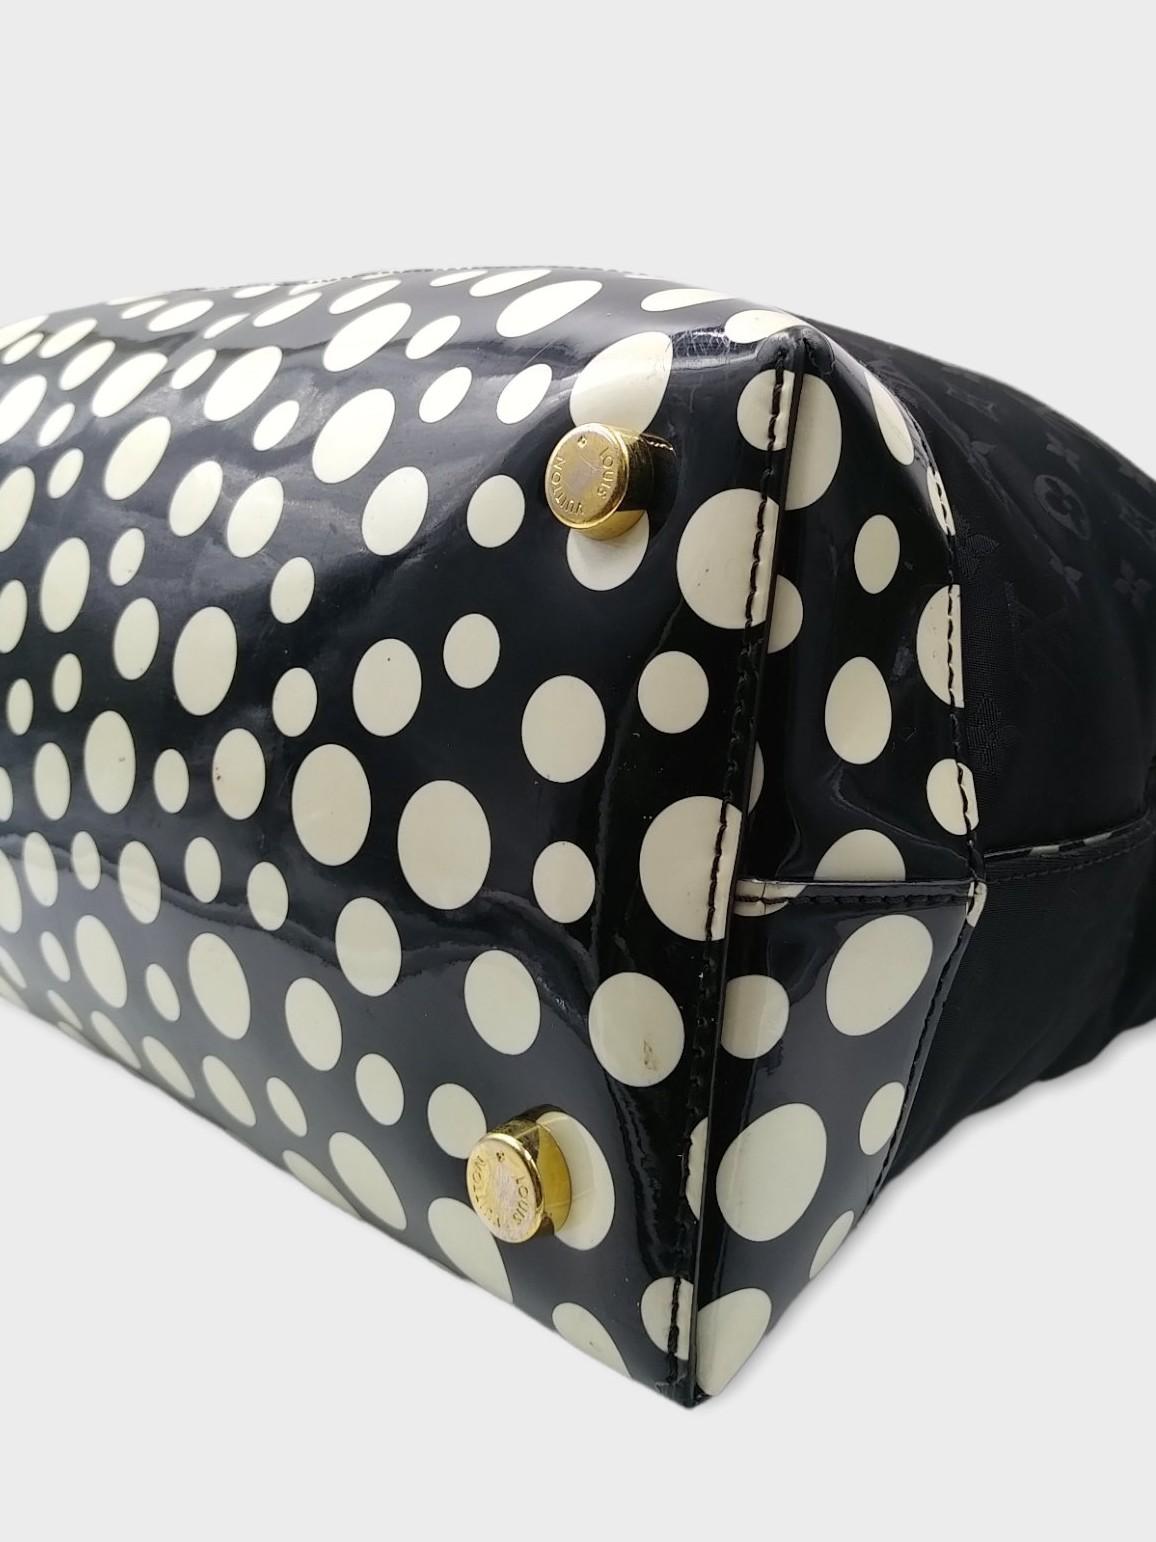 Louis Vuitton Black Monogram Satin Yayoi Kusama Dots Lockit Vertical MM Bag 2012 5